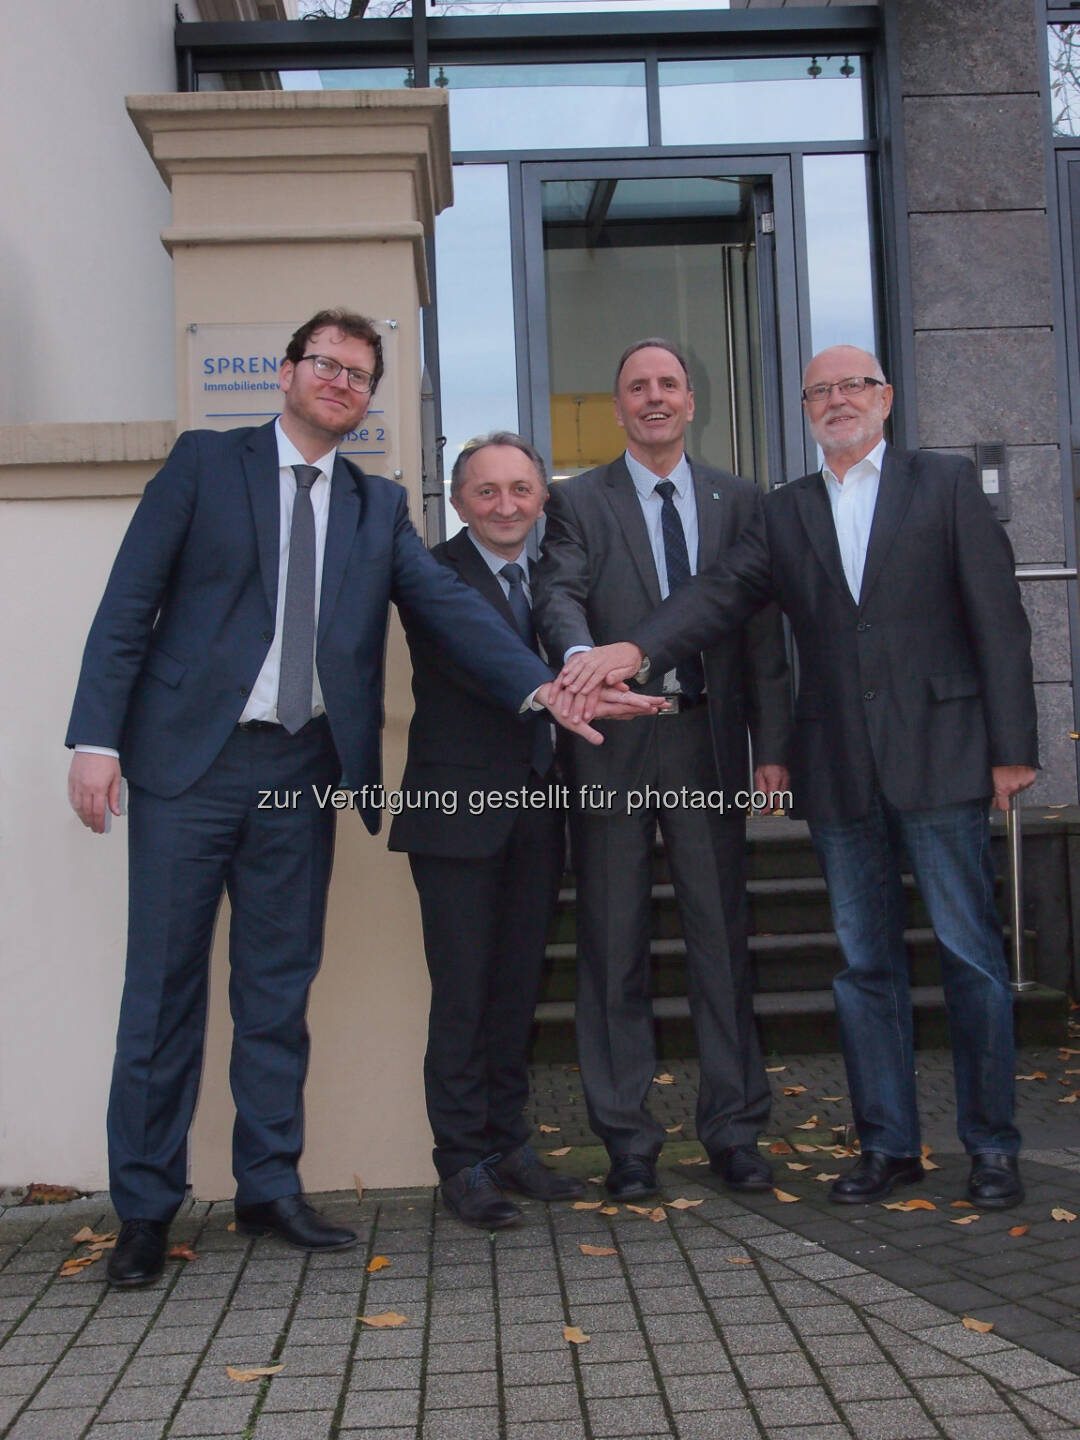 Jan Sprengnetter, Günther Schabus und Heinz Raunikar (R&S Software), Hans-Otto Sprengnetter: R&S Software GmbH wird Teil der Sprengnetter Gruppe : Fotocredit: Sprengnetter/R&S